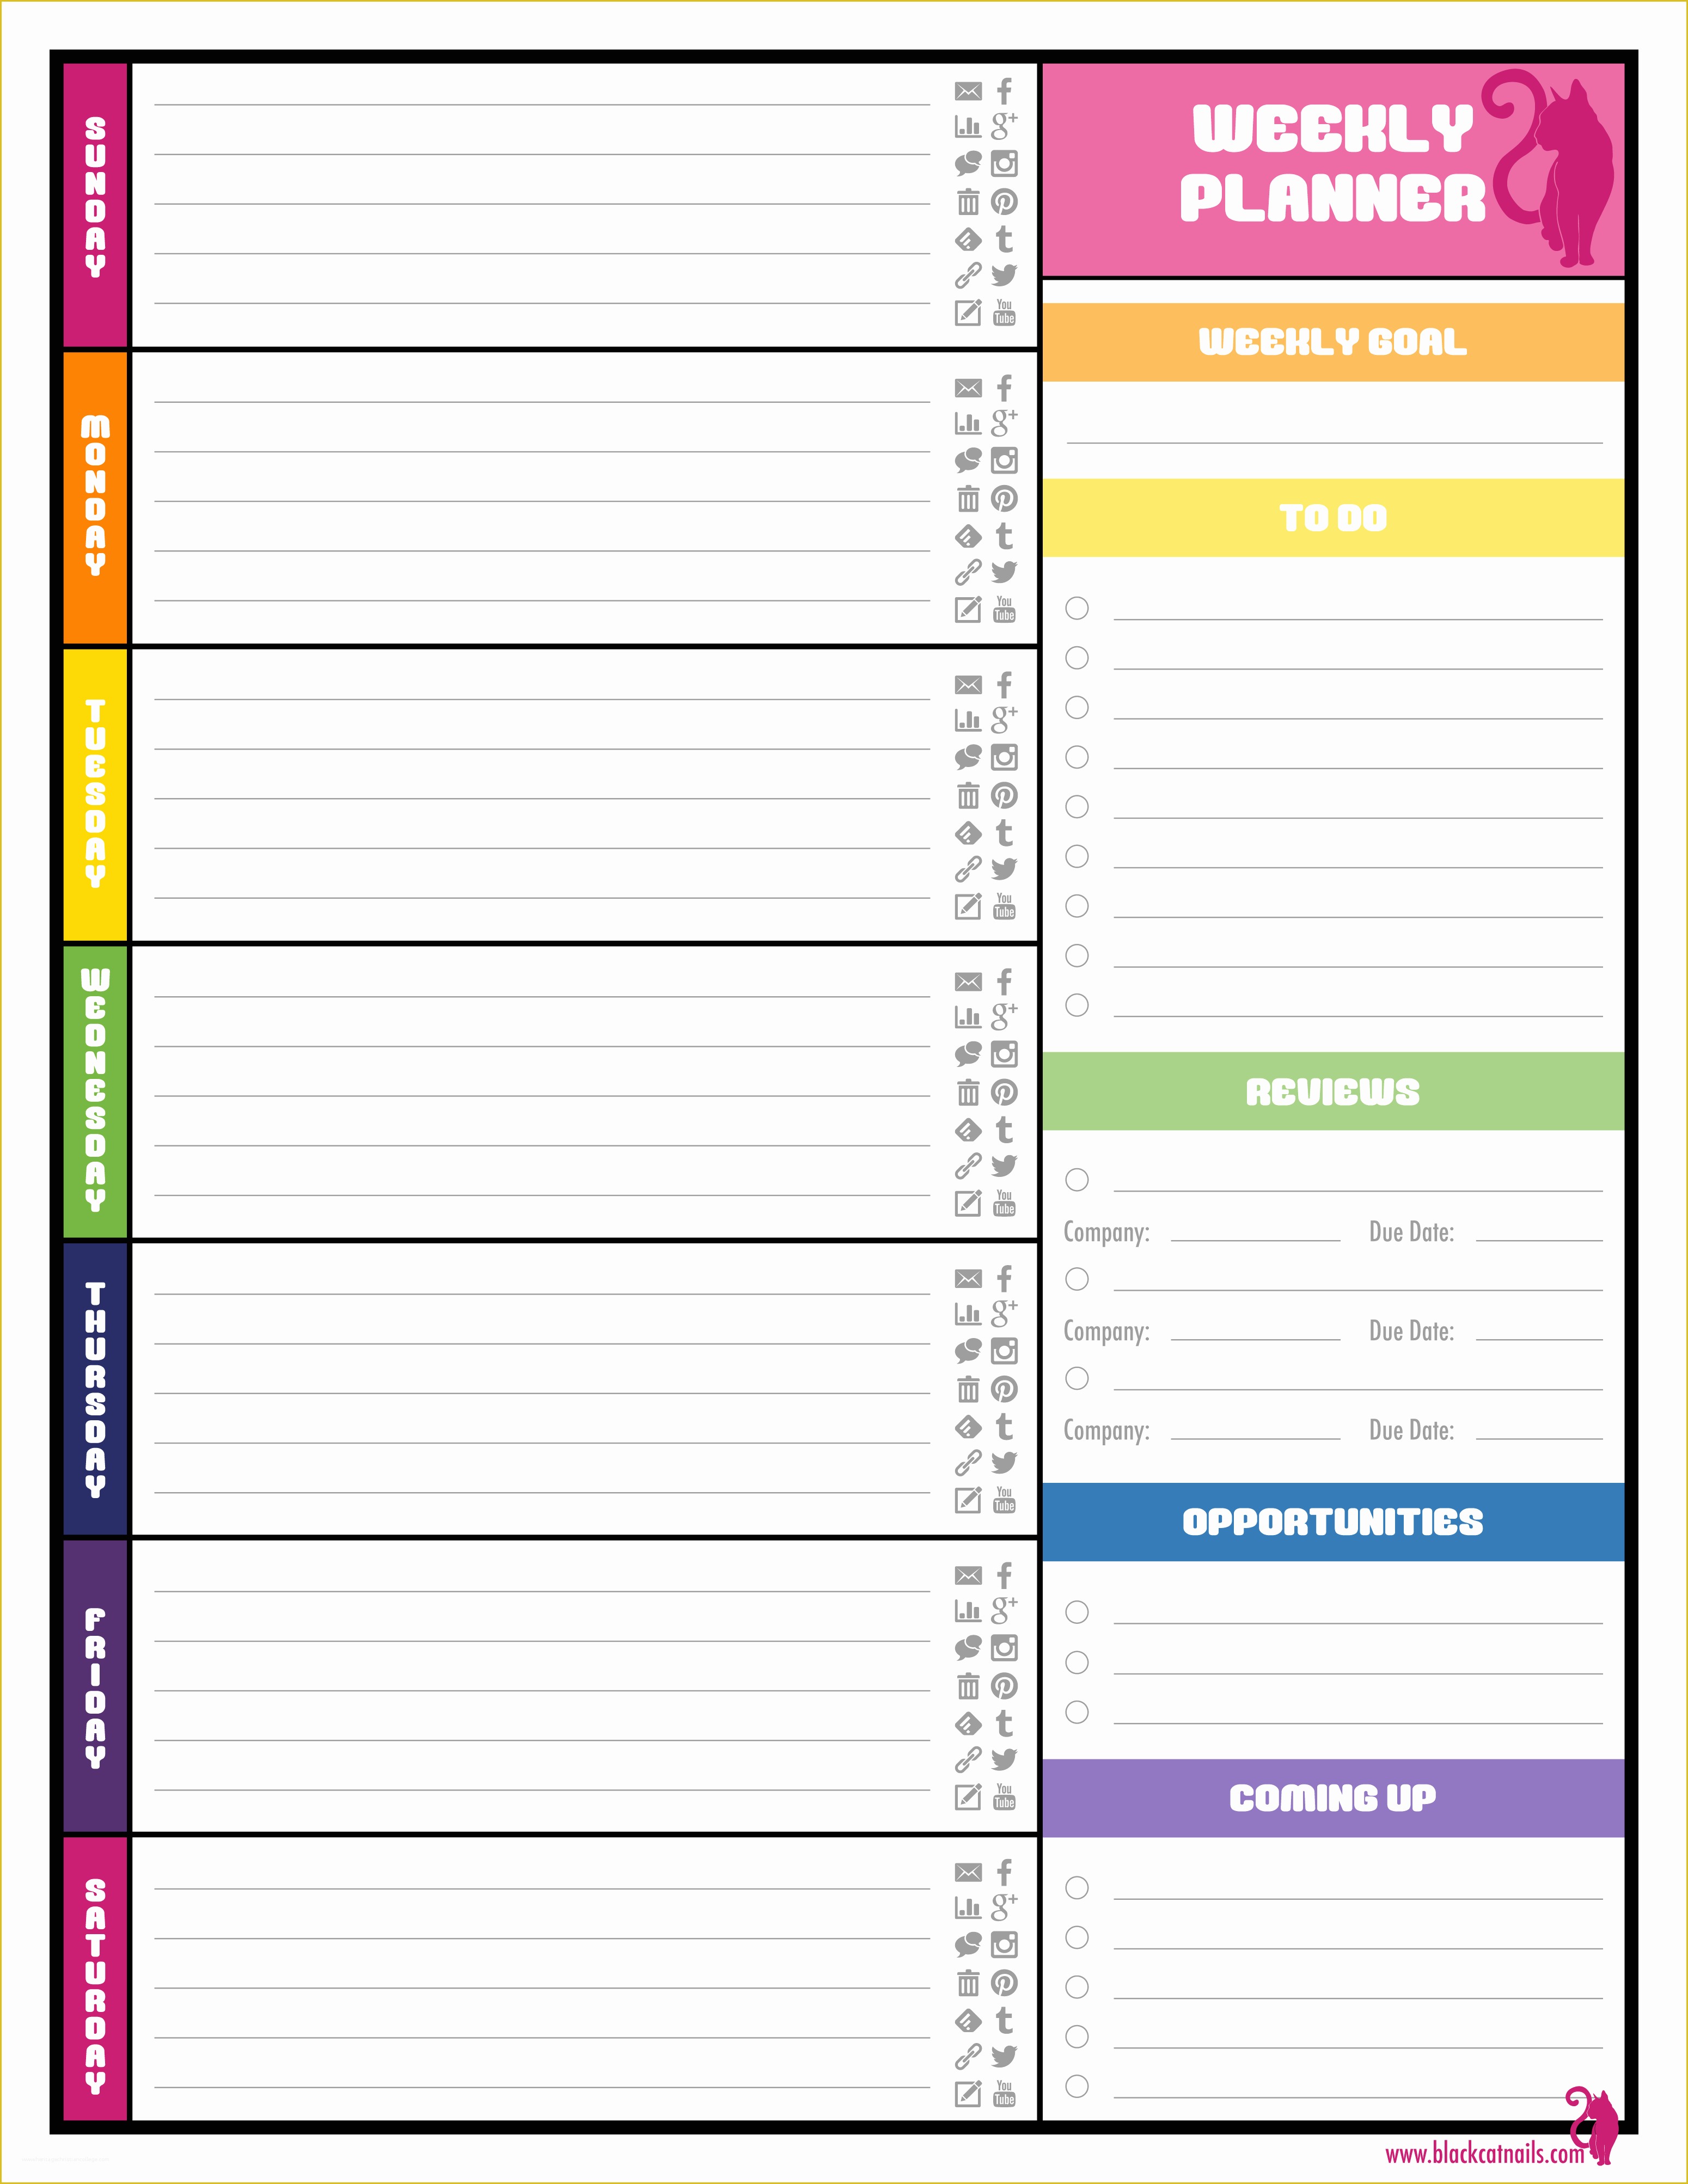 Free Weekly Calendar Template Of 9 Best Of Weekly Planner Printable Pdf Weekly